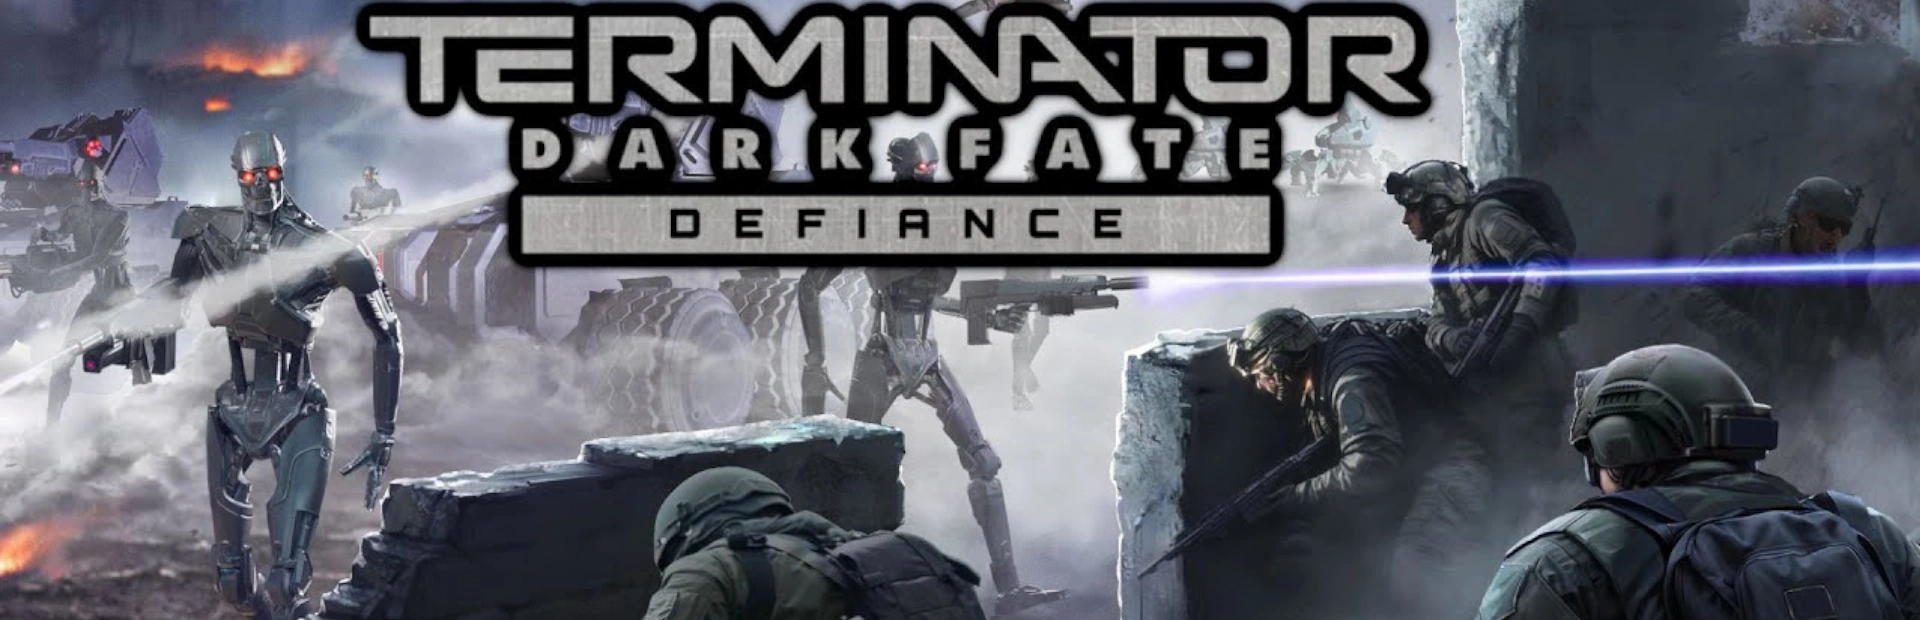 دانلود بازی Terminator: Dark Fate-Defiance برای کامپیوتر | گیمباتو